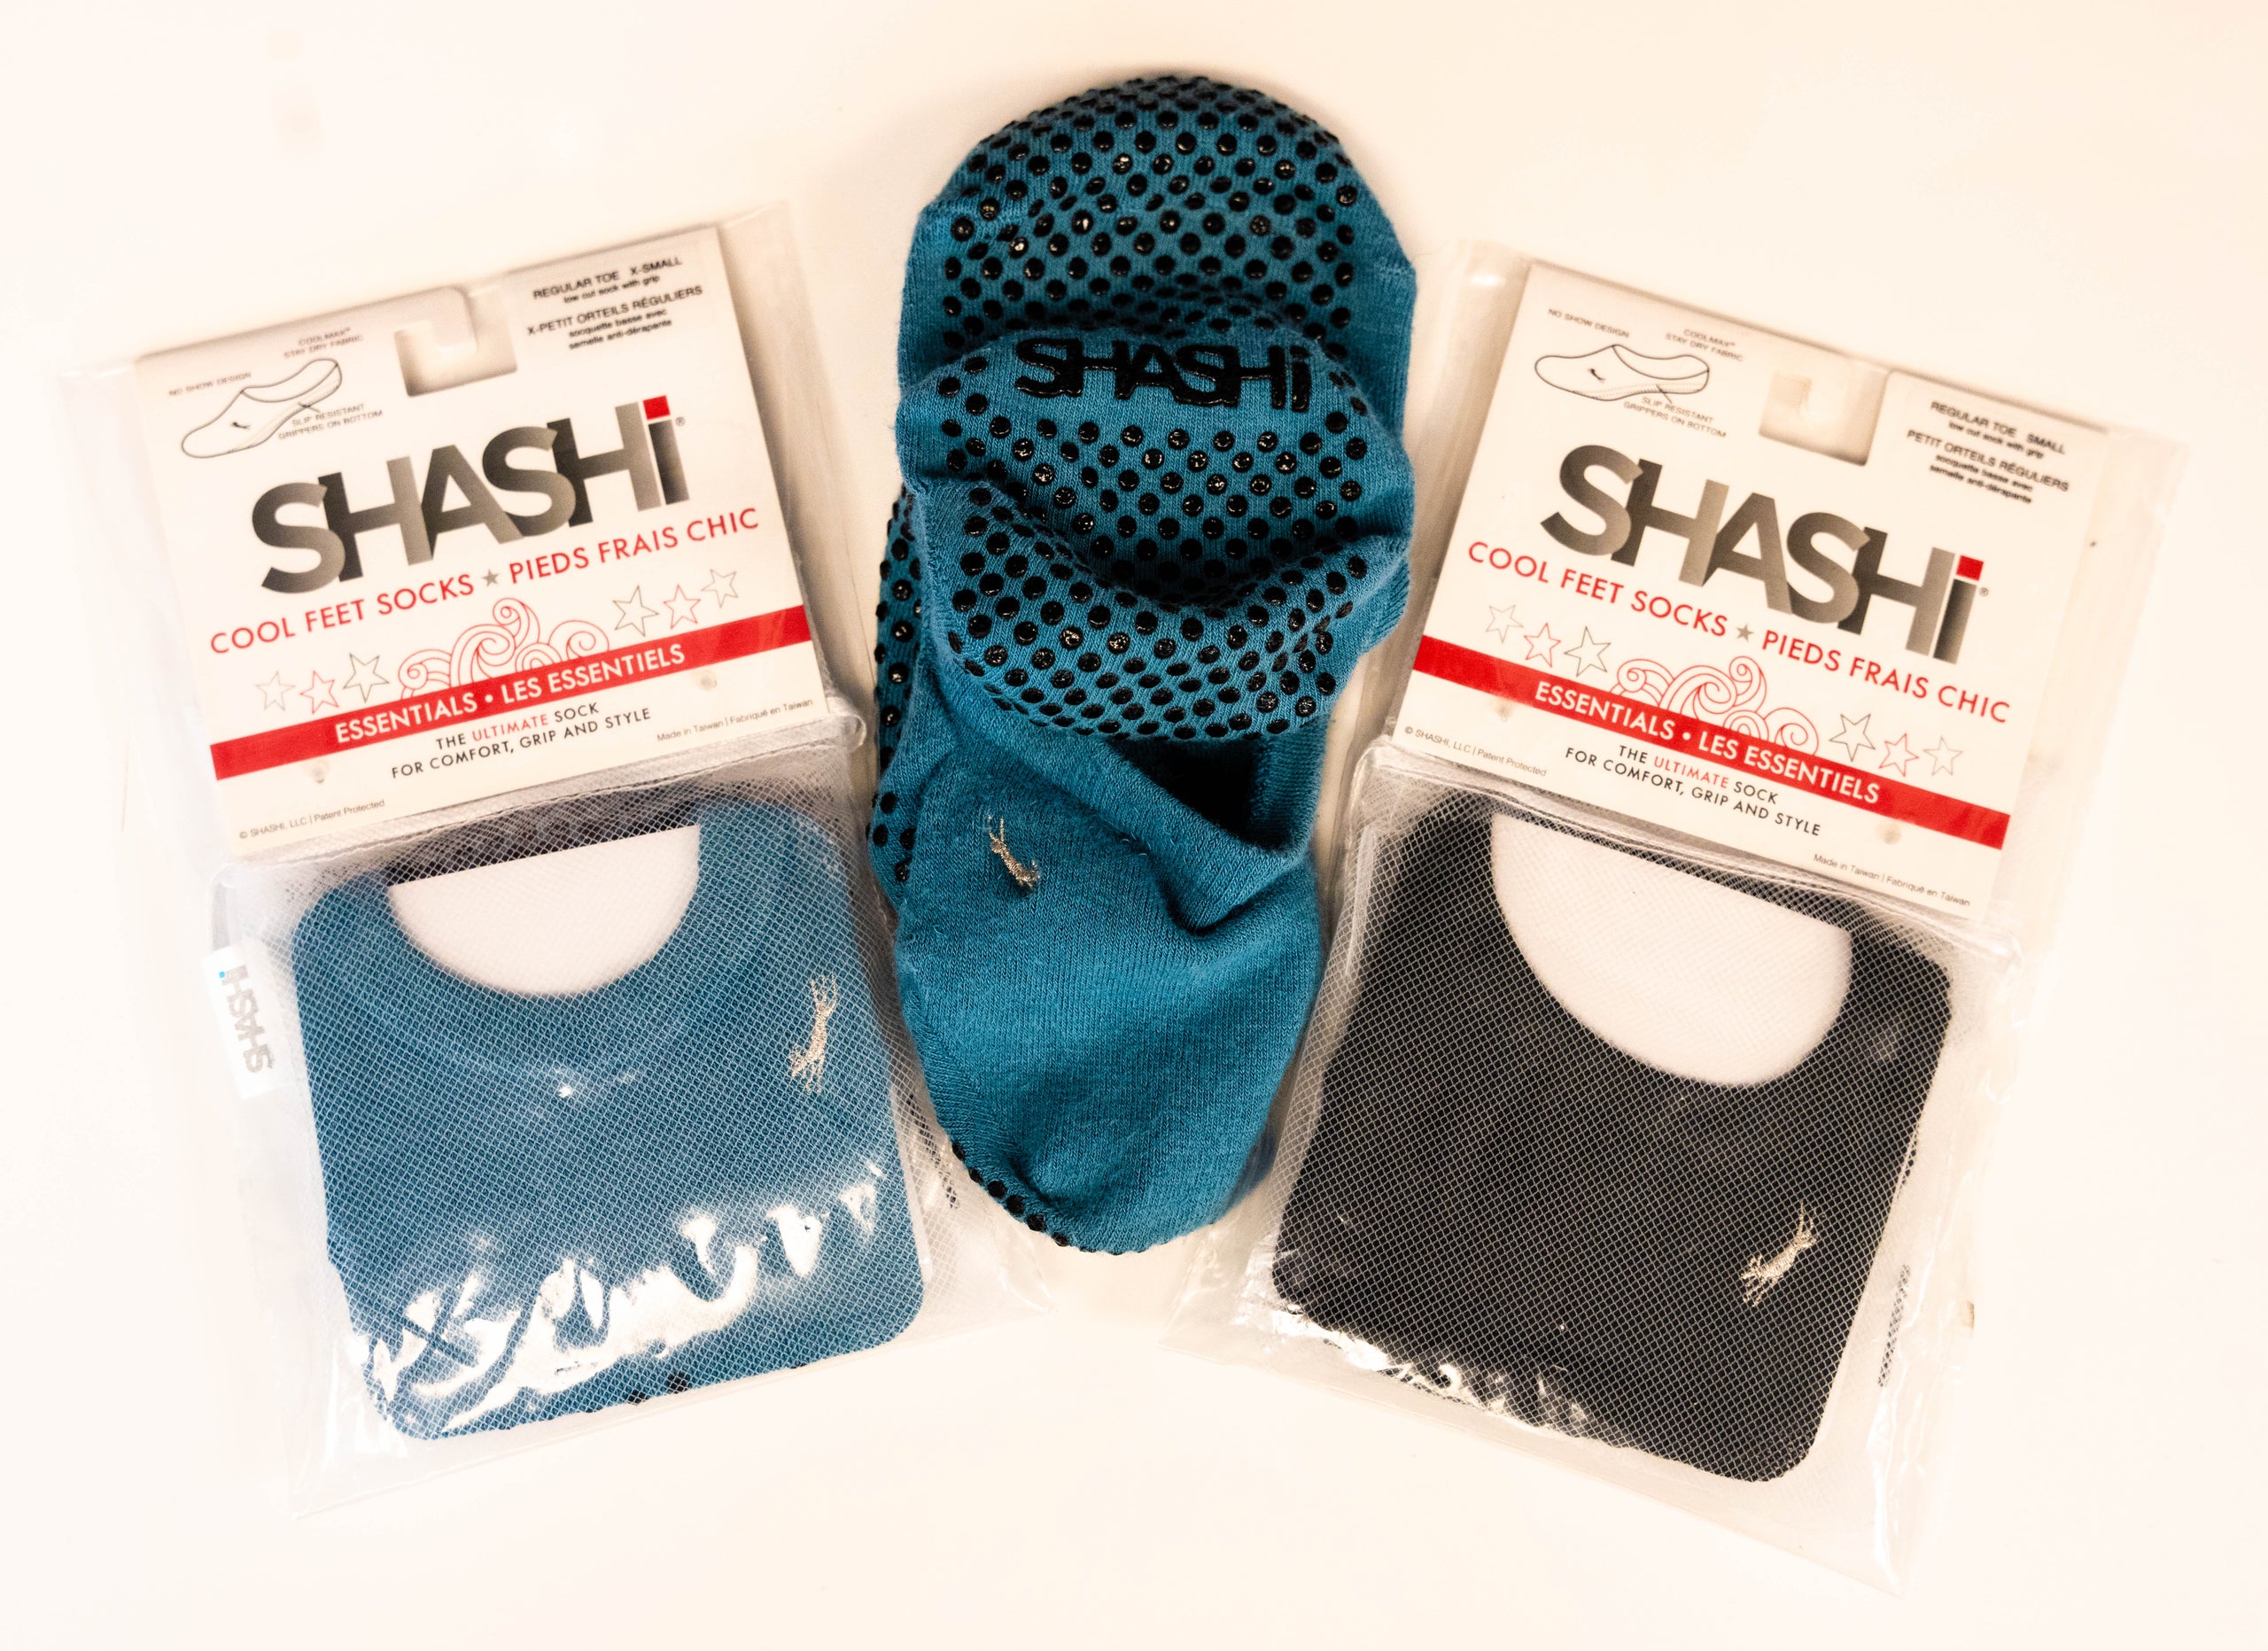 Shashi socks